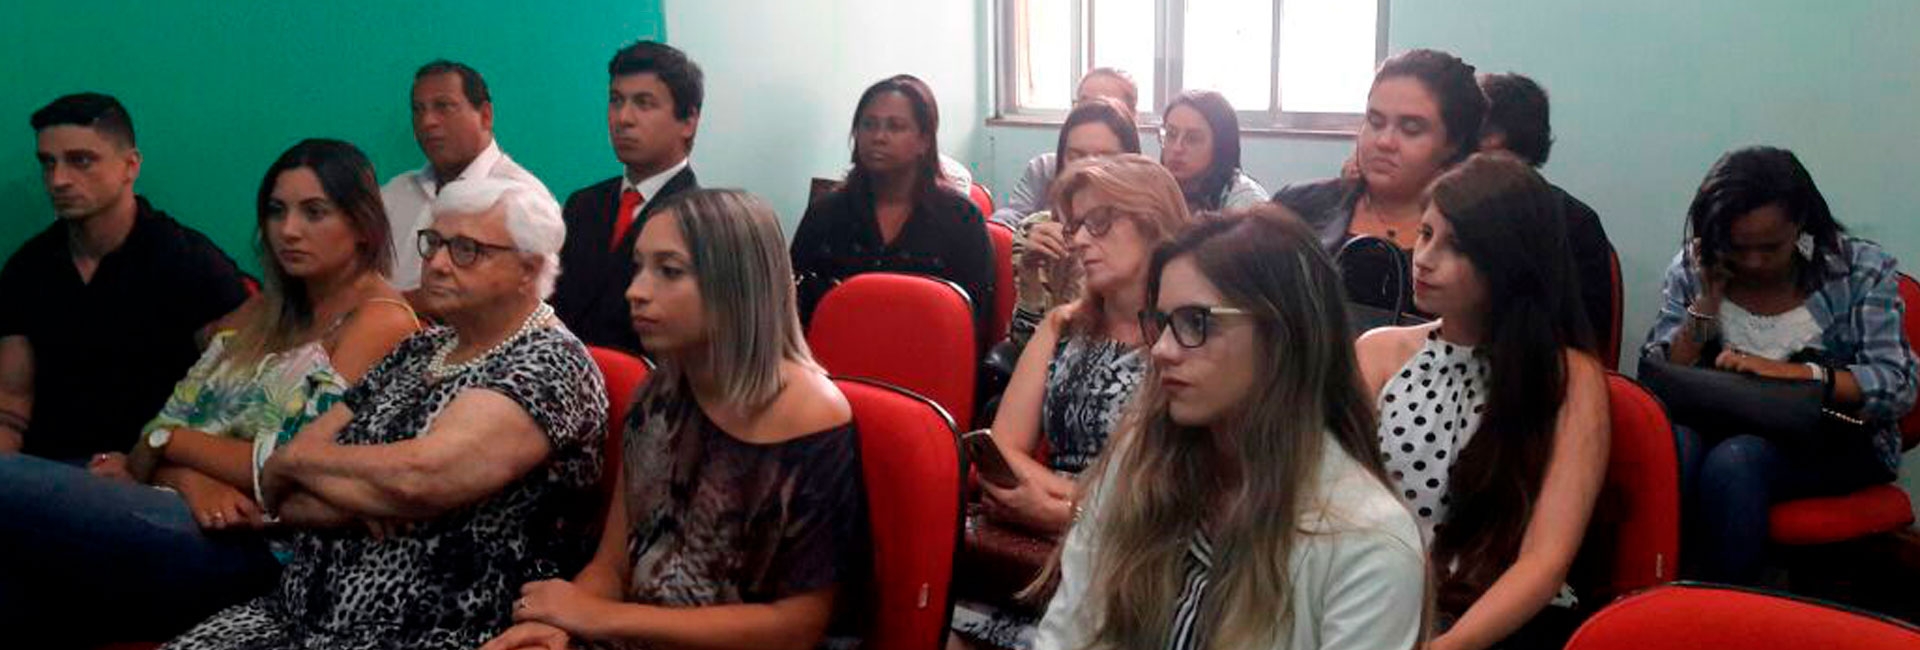 Primeira entrega de carteiras aos novos advogados e advogadas de Barra do Pirai, realizada em 07 de fevereiro